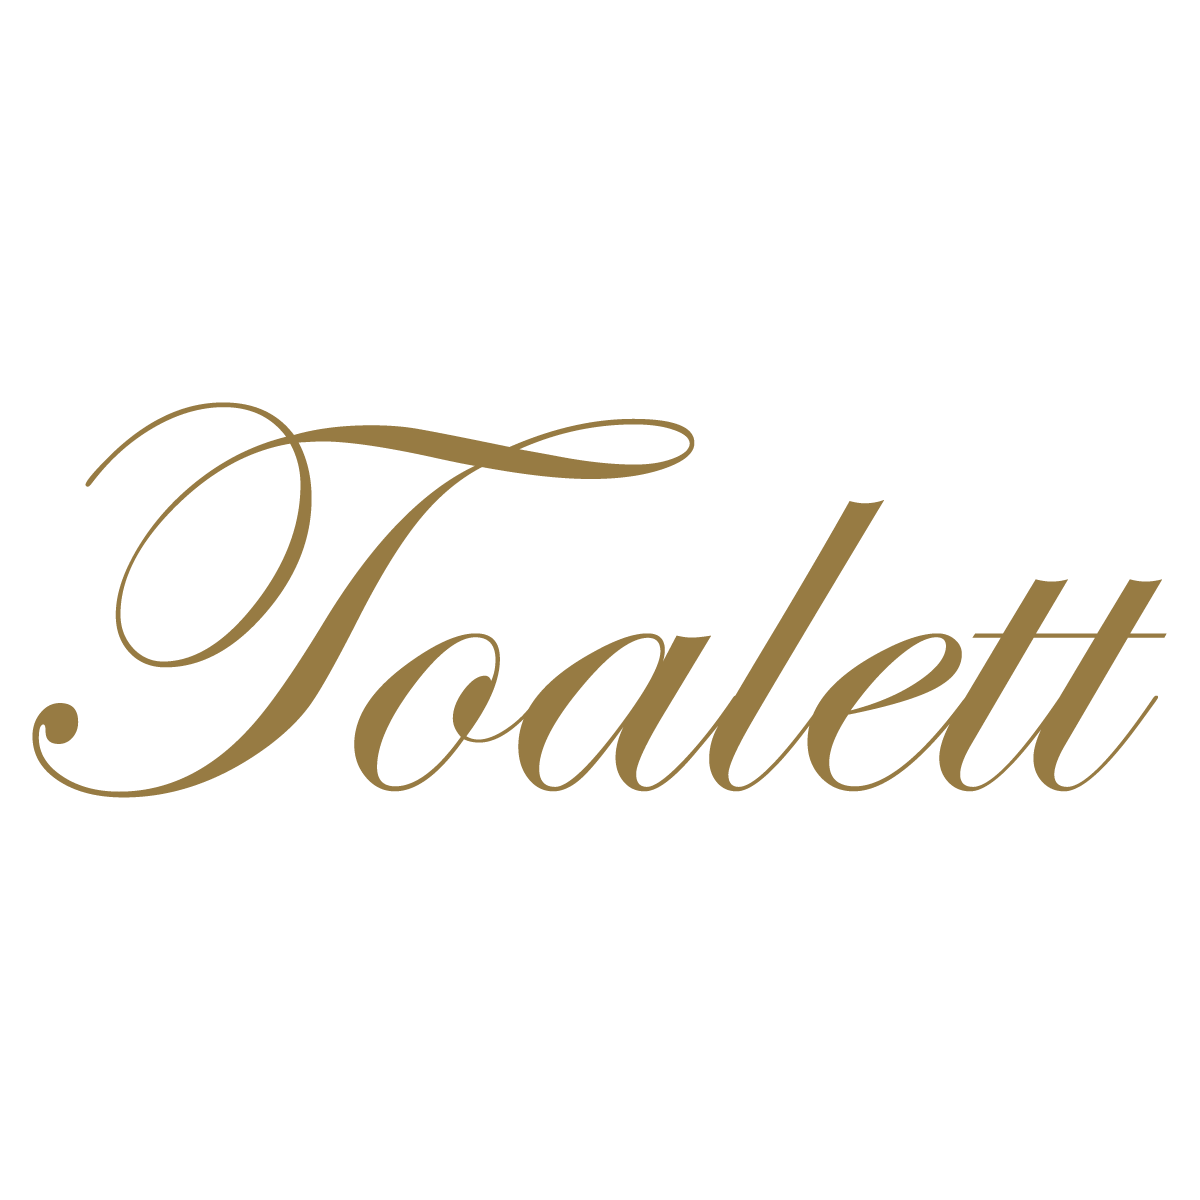 Toalett - Vinyltext - Guld